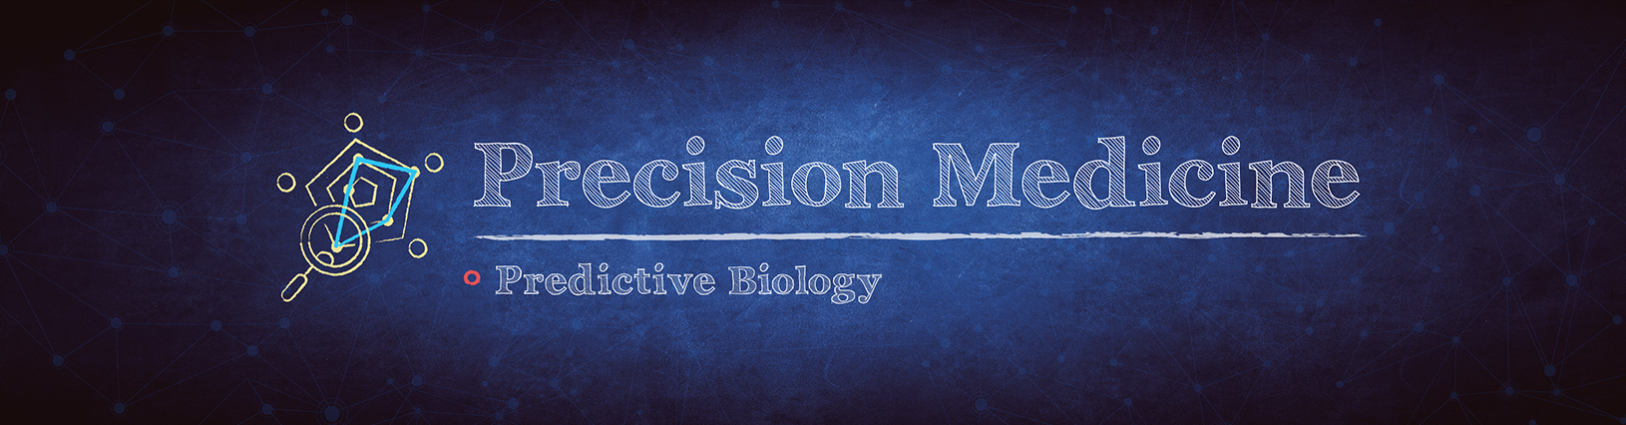 Precision Medicine: Predictive Biology